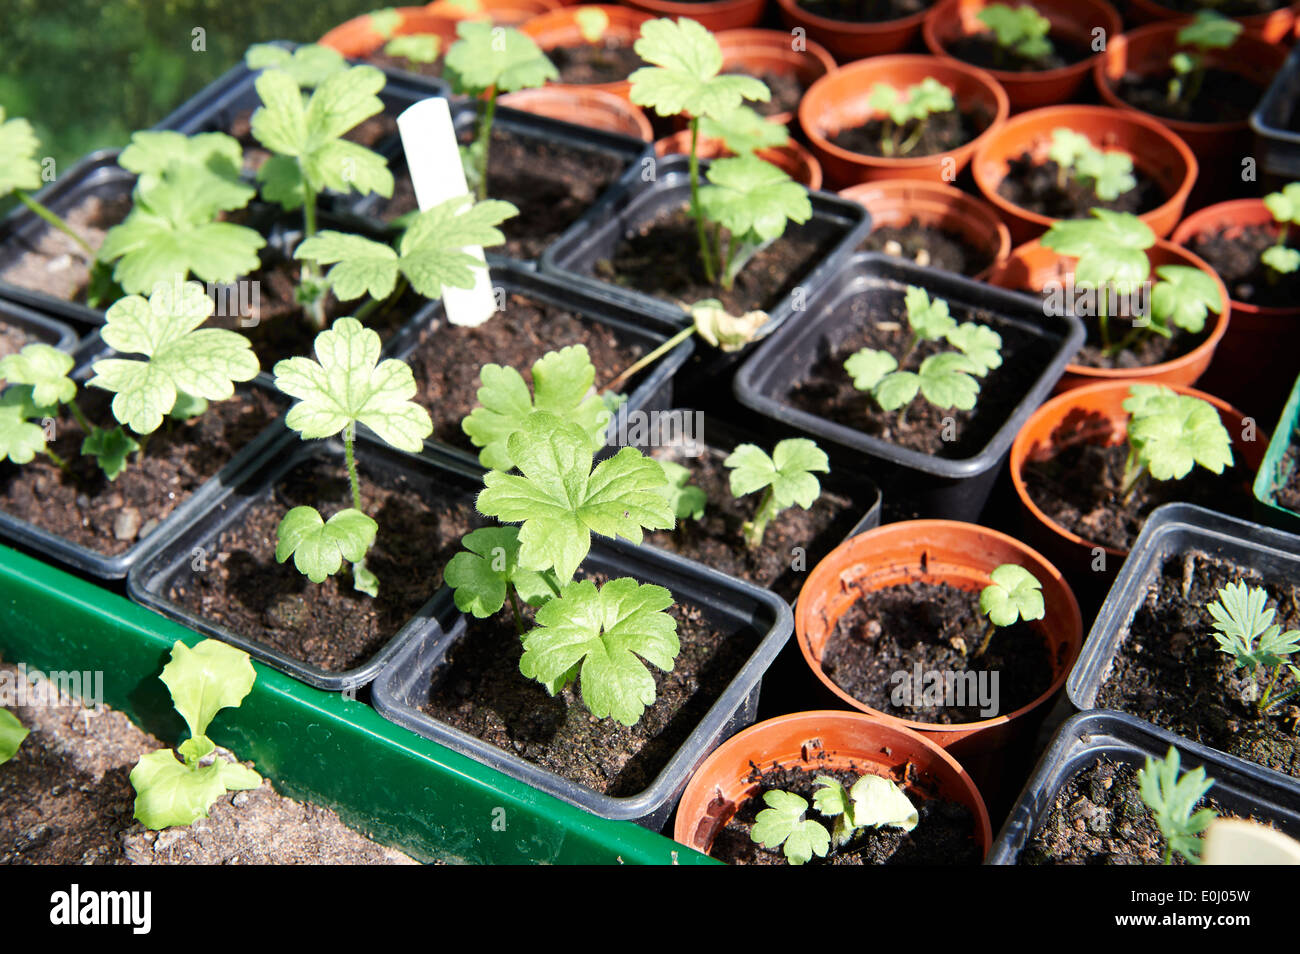 Varie piantine che crescono in vasi per piante in serra Foto Stock